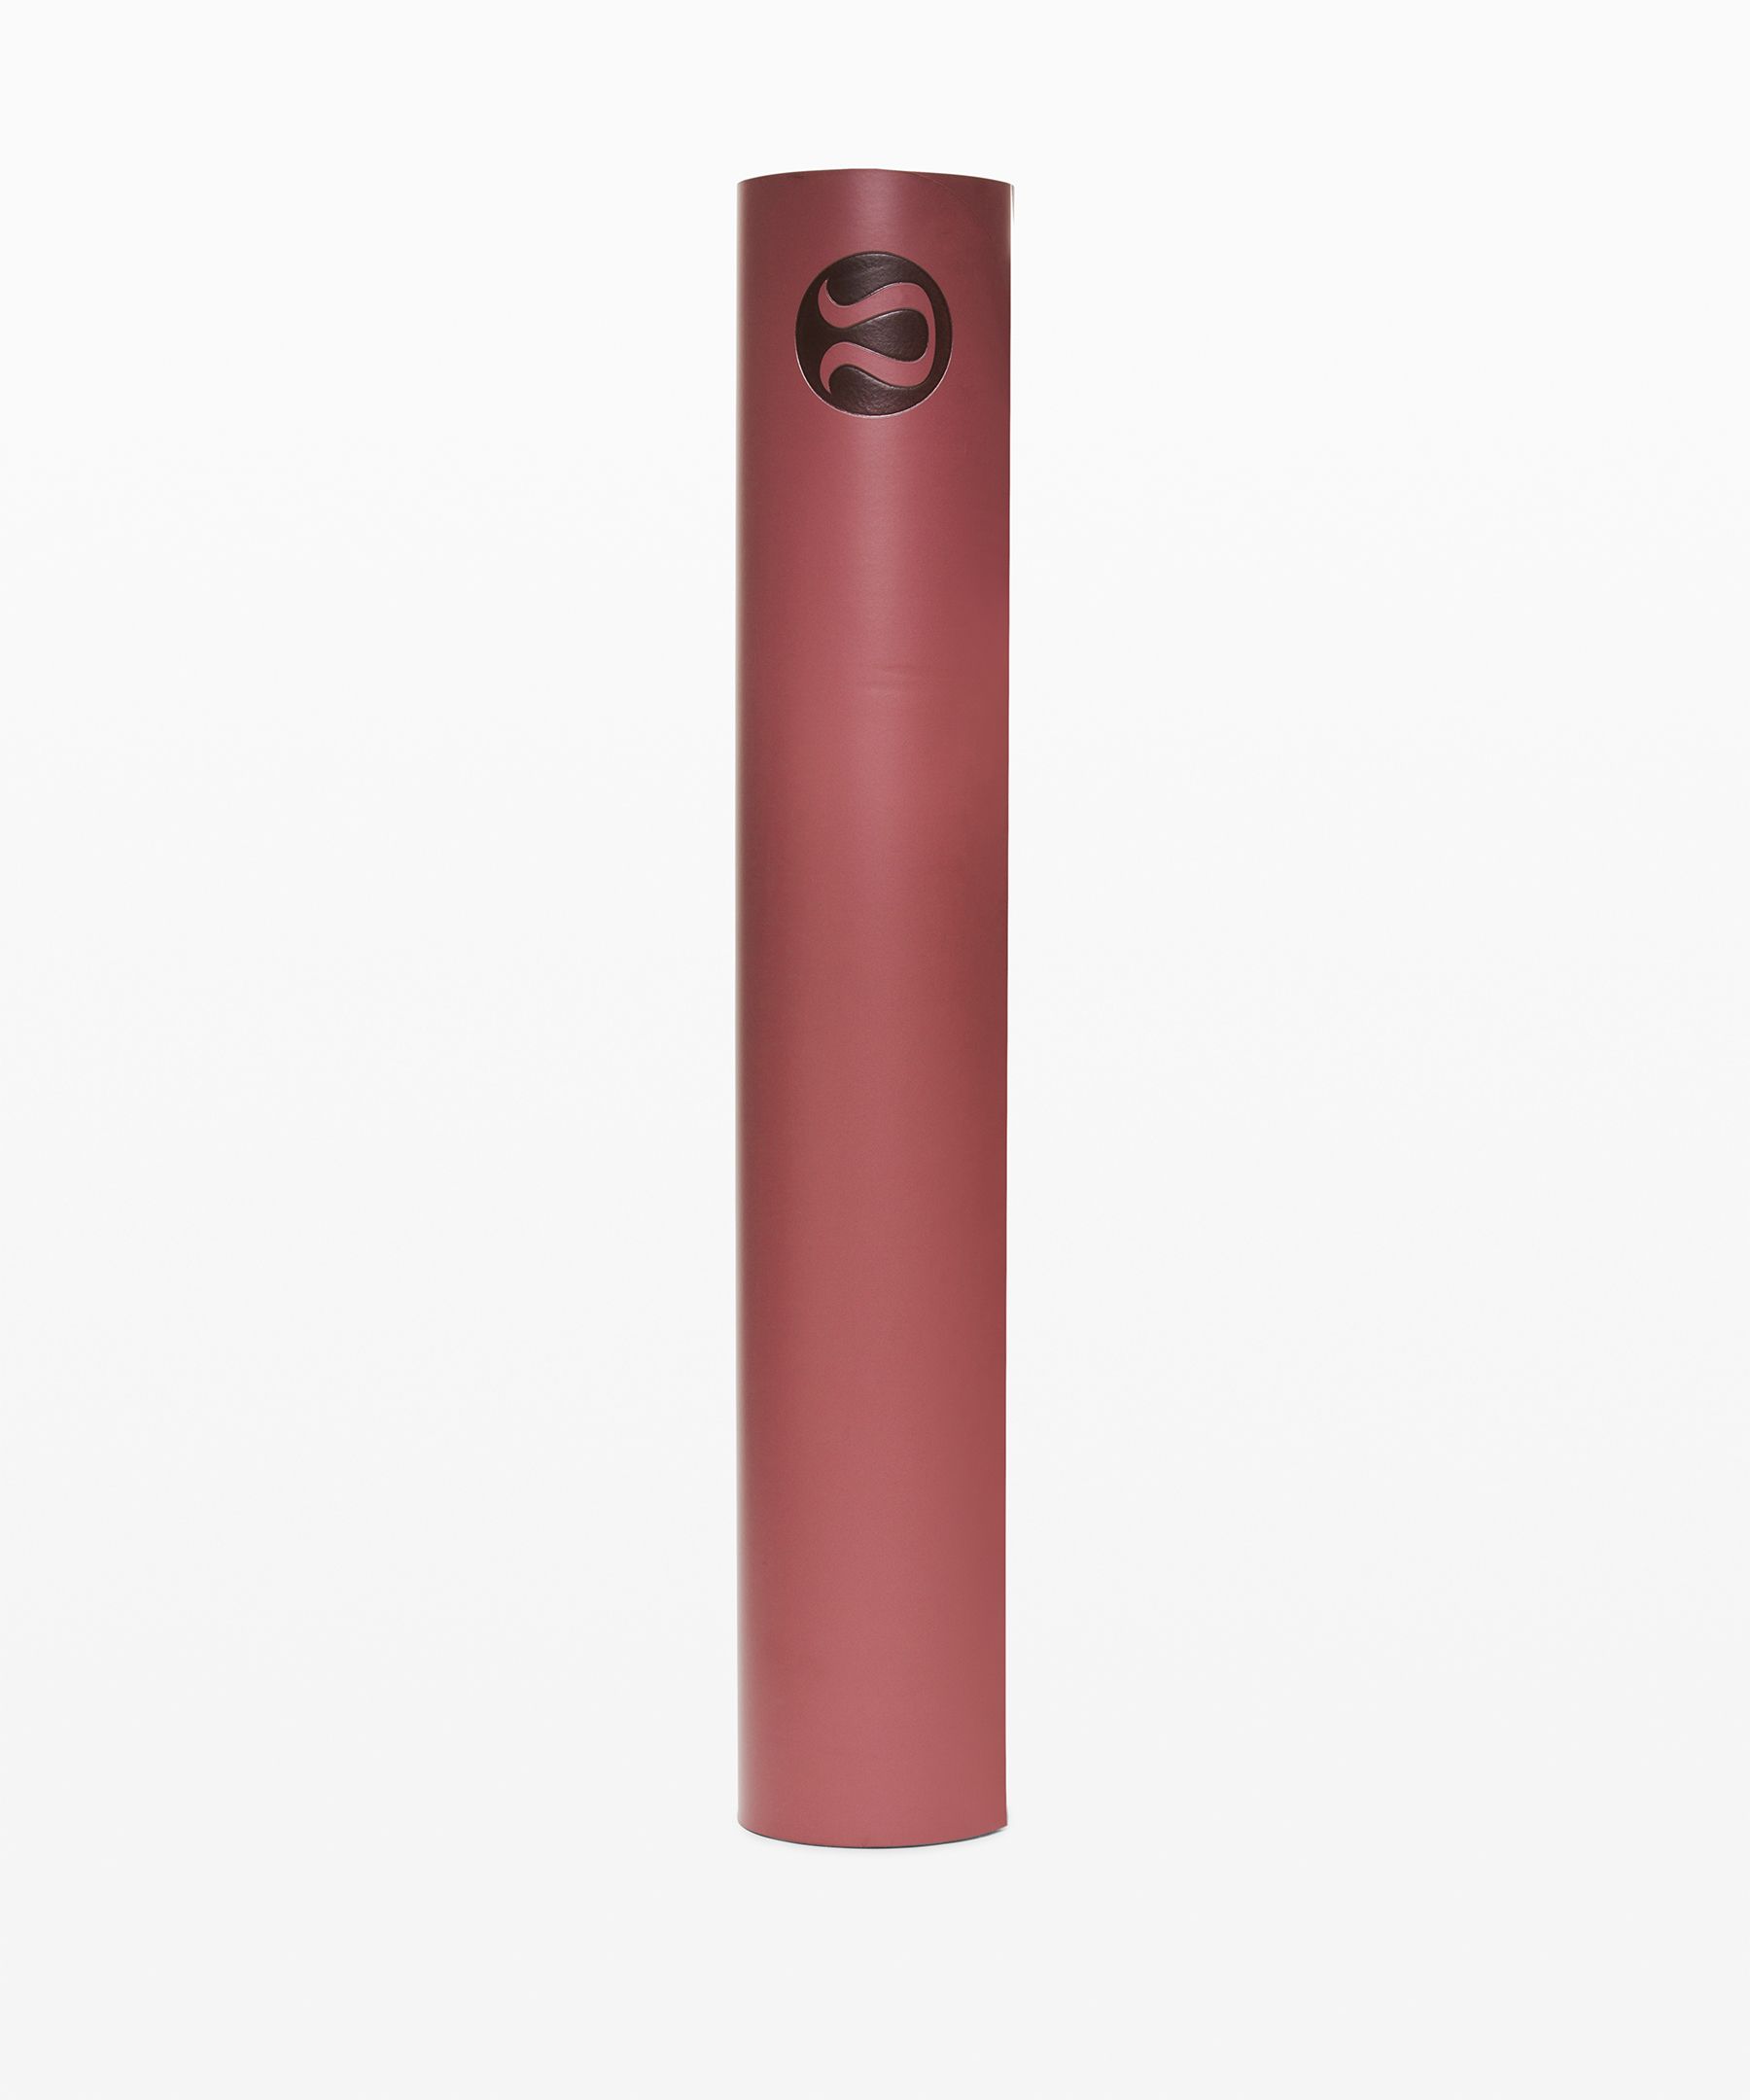 Lululemon The Reversible Mat 5mm In Smoky Red/ballet Slipper/chalky Rose